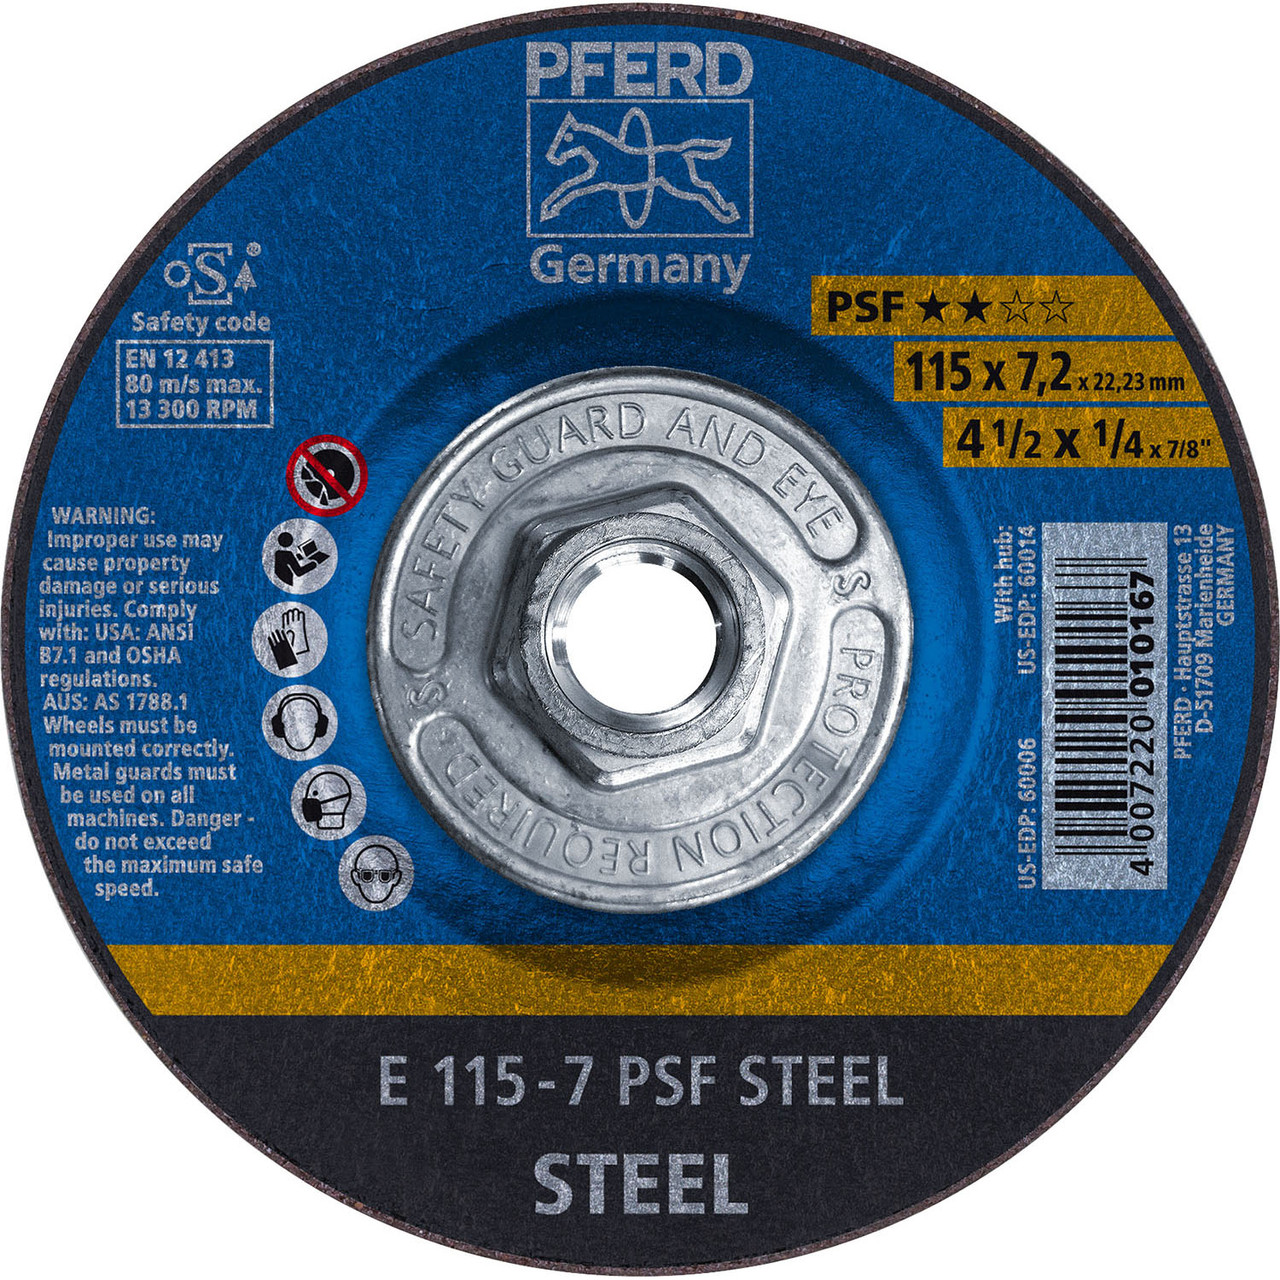 10pk PFERD 60014 4-1/2" x 1/4" Grinding Wheel 5/8-11 A 24 R PSF STEEL T27 